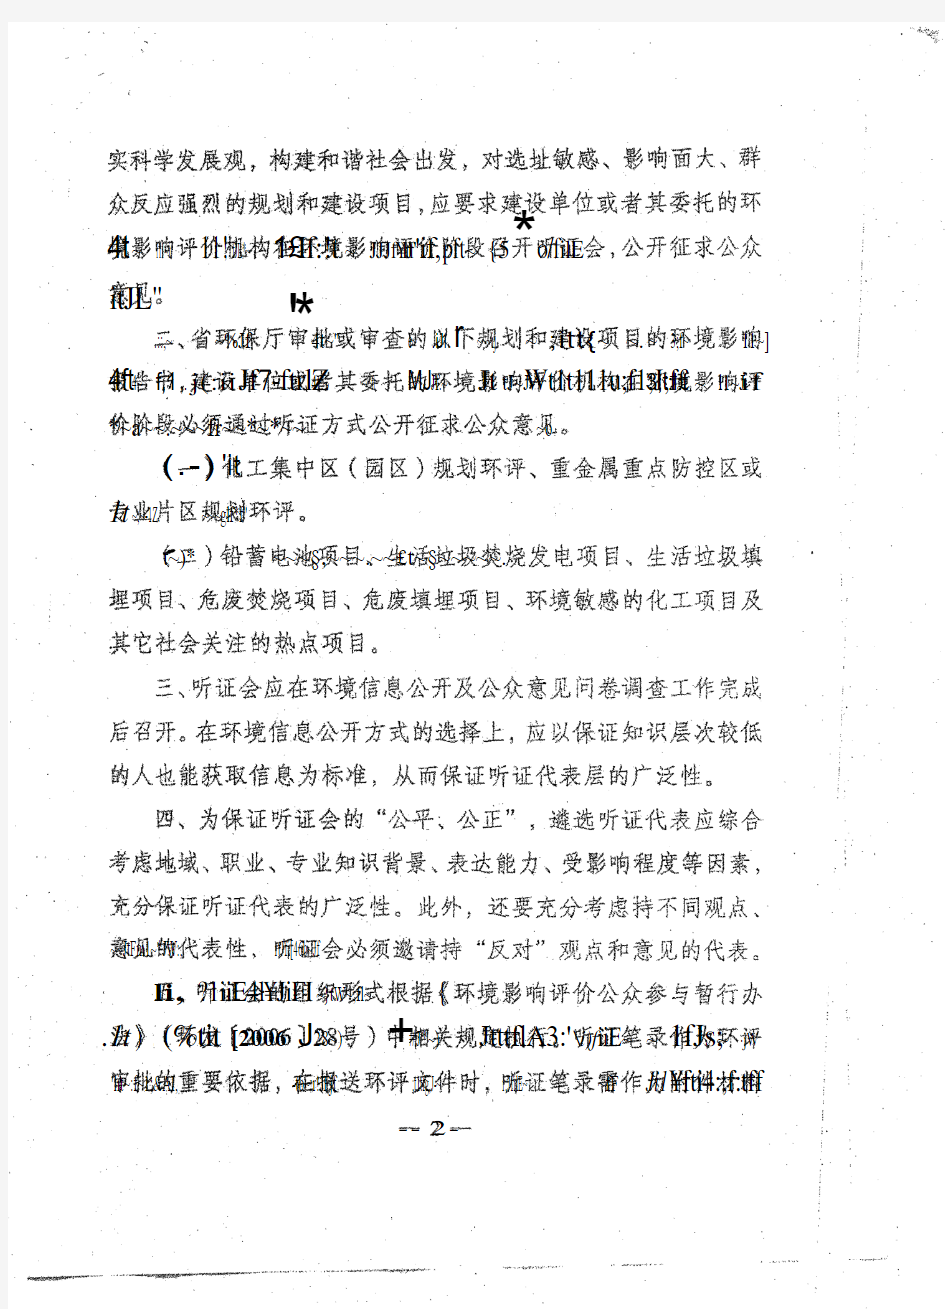 江苏省环境保护厅文件(关于进一步规范规划和建设项目环评中公众参与听证制度的通知)